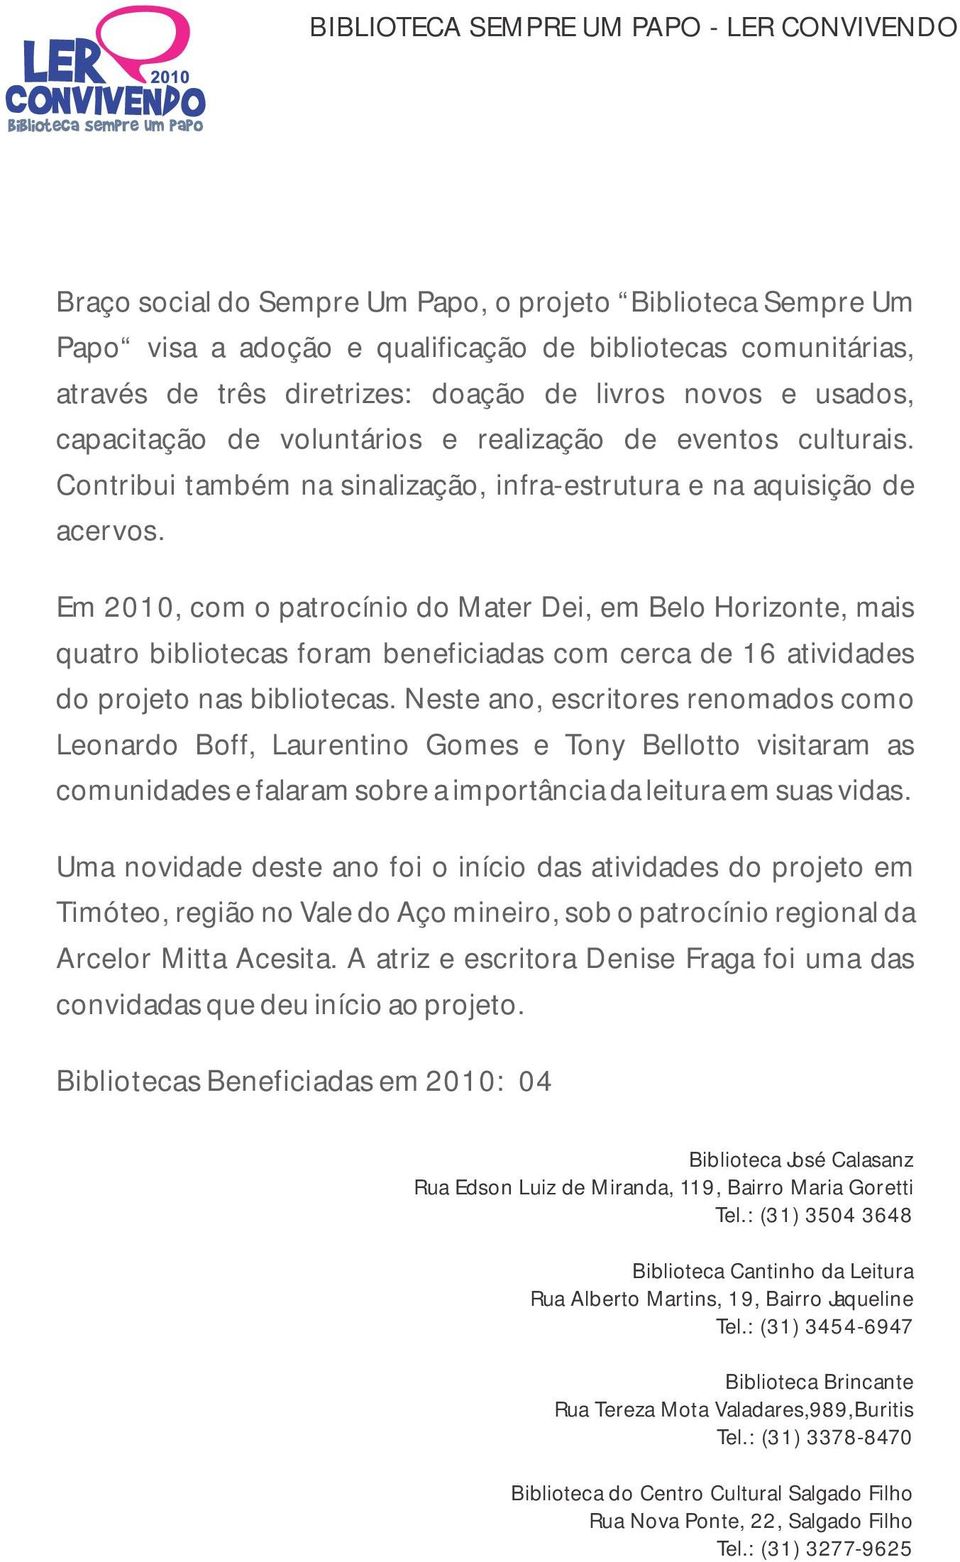 Em 2010, com o patrocínio do Mater Dei, em Belo Horizonte, mais quatro bibliotecas foram beneficiadas com cerca de 16 atividades do projeto nas bibliotecas.